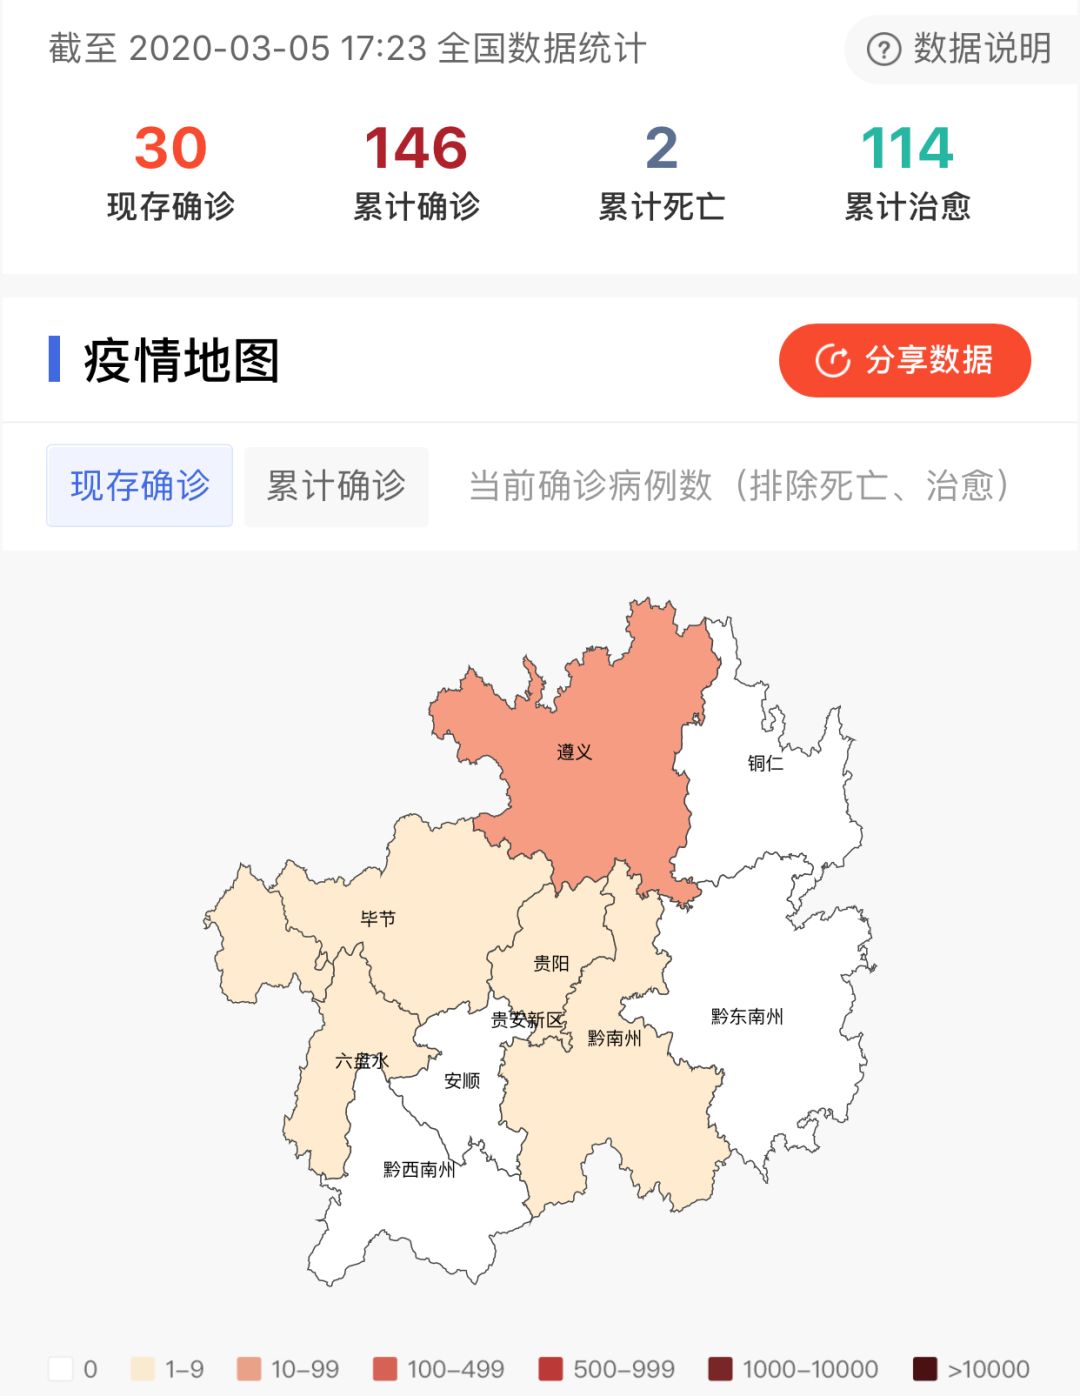 贵州省疫情分布图据国家卫健委消息,截至3月5日17时23分,我国新冠肺炎